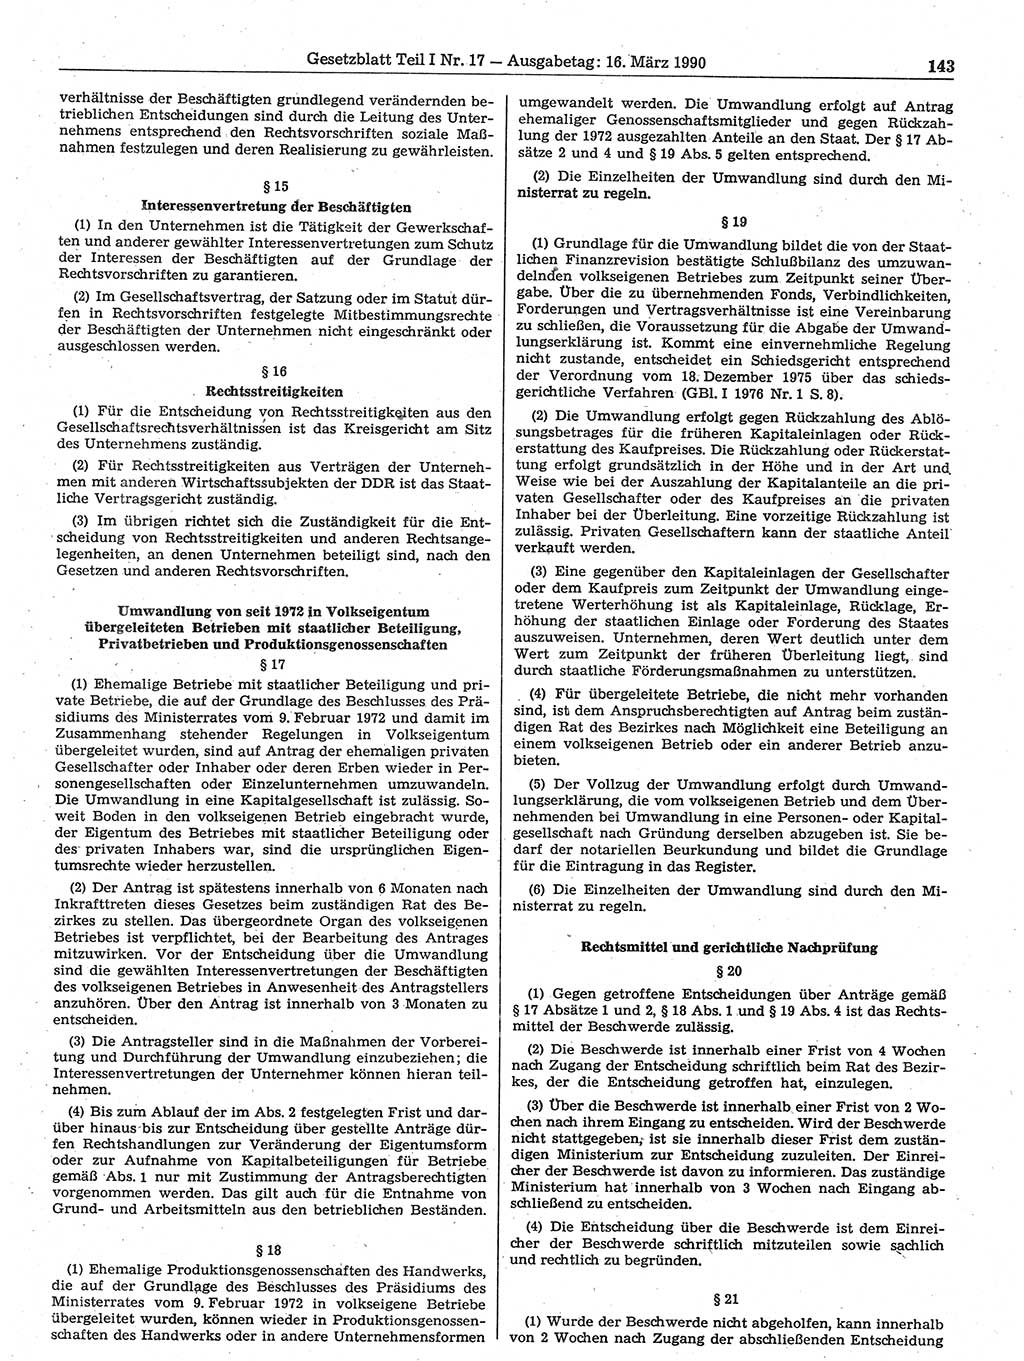 Gesetzblatt (GBl.) der Deutschen Demokratischen Republik (DDR) Teil Ⅰ 1990, Seite 143 (GBl. DDR Ⅰ 1990, S. 143)